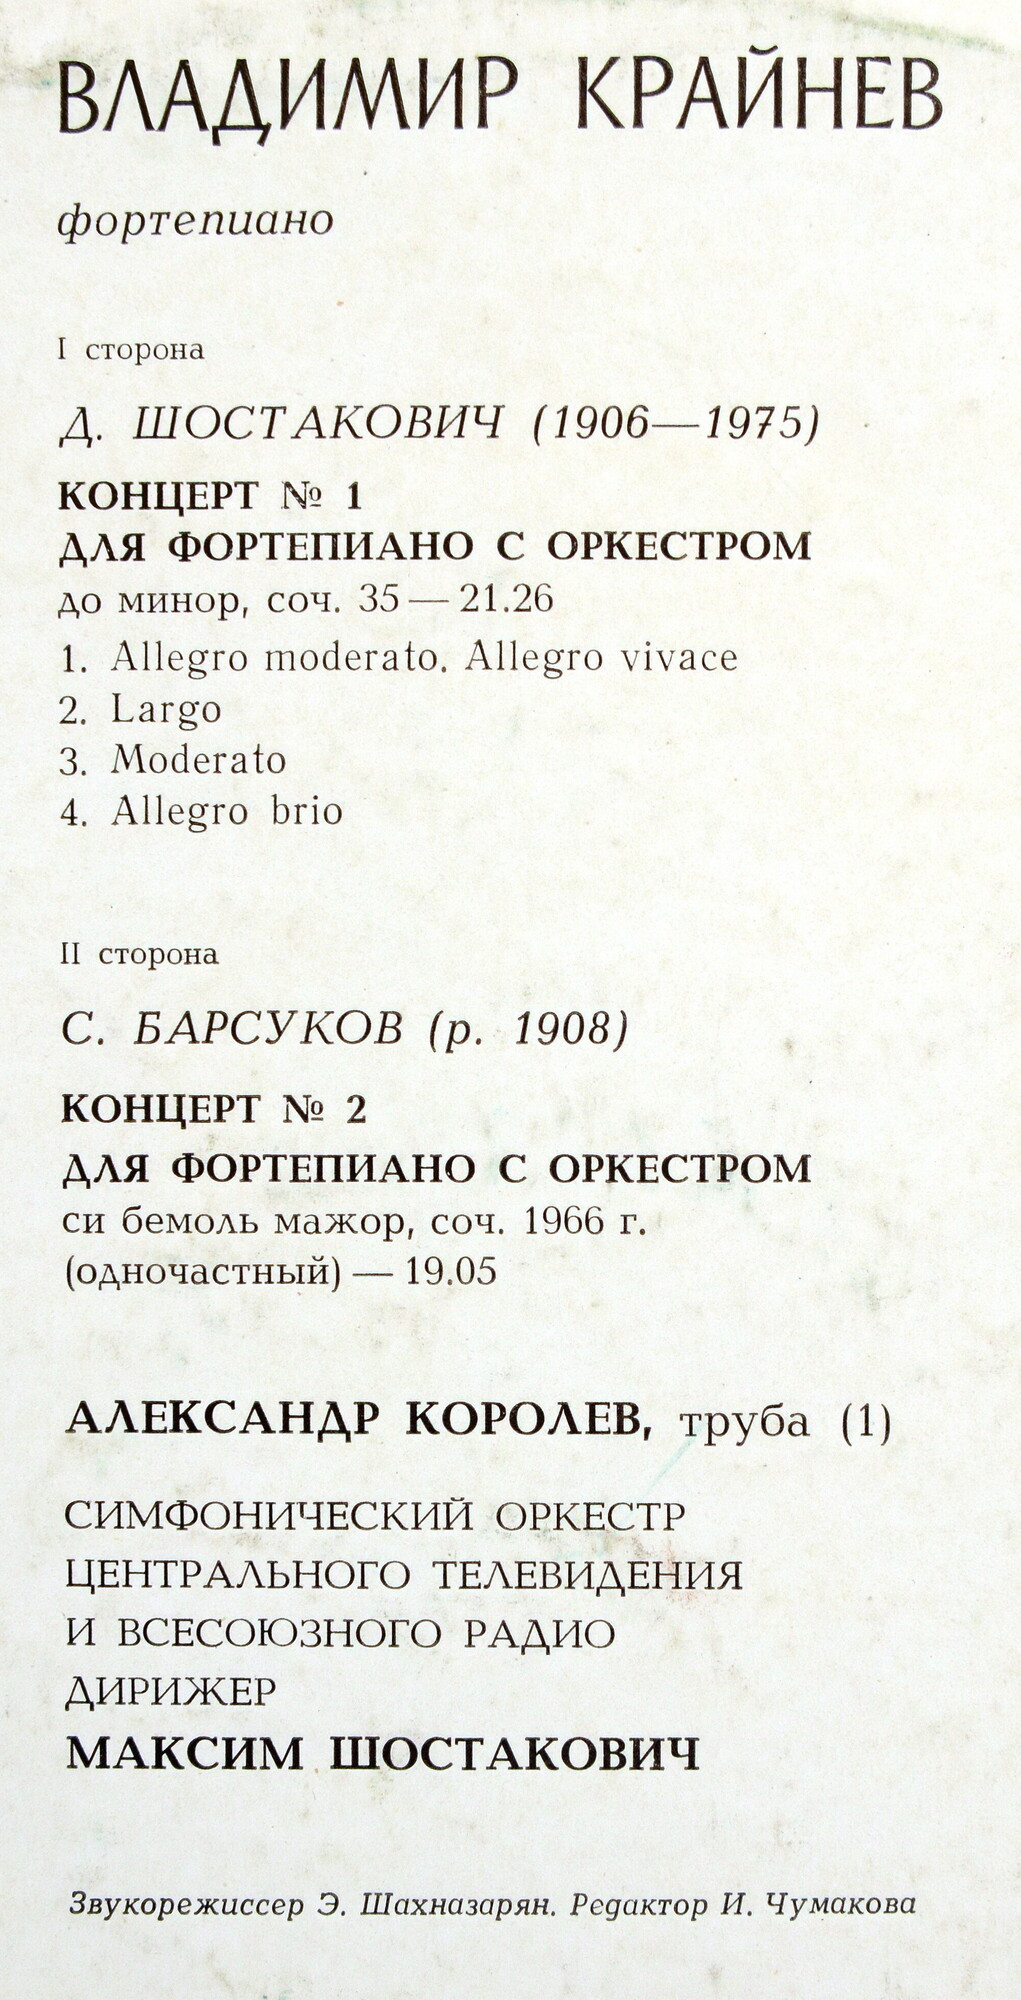 Владимир КРАЙНЕВ (фортепиано)